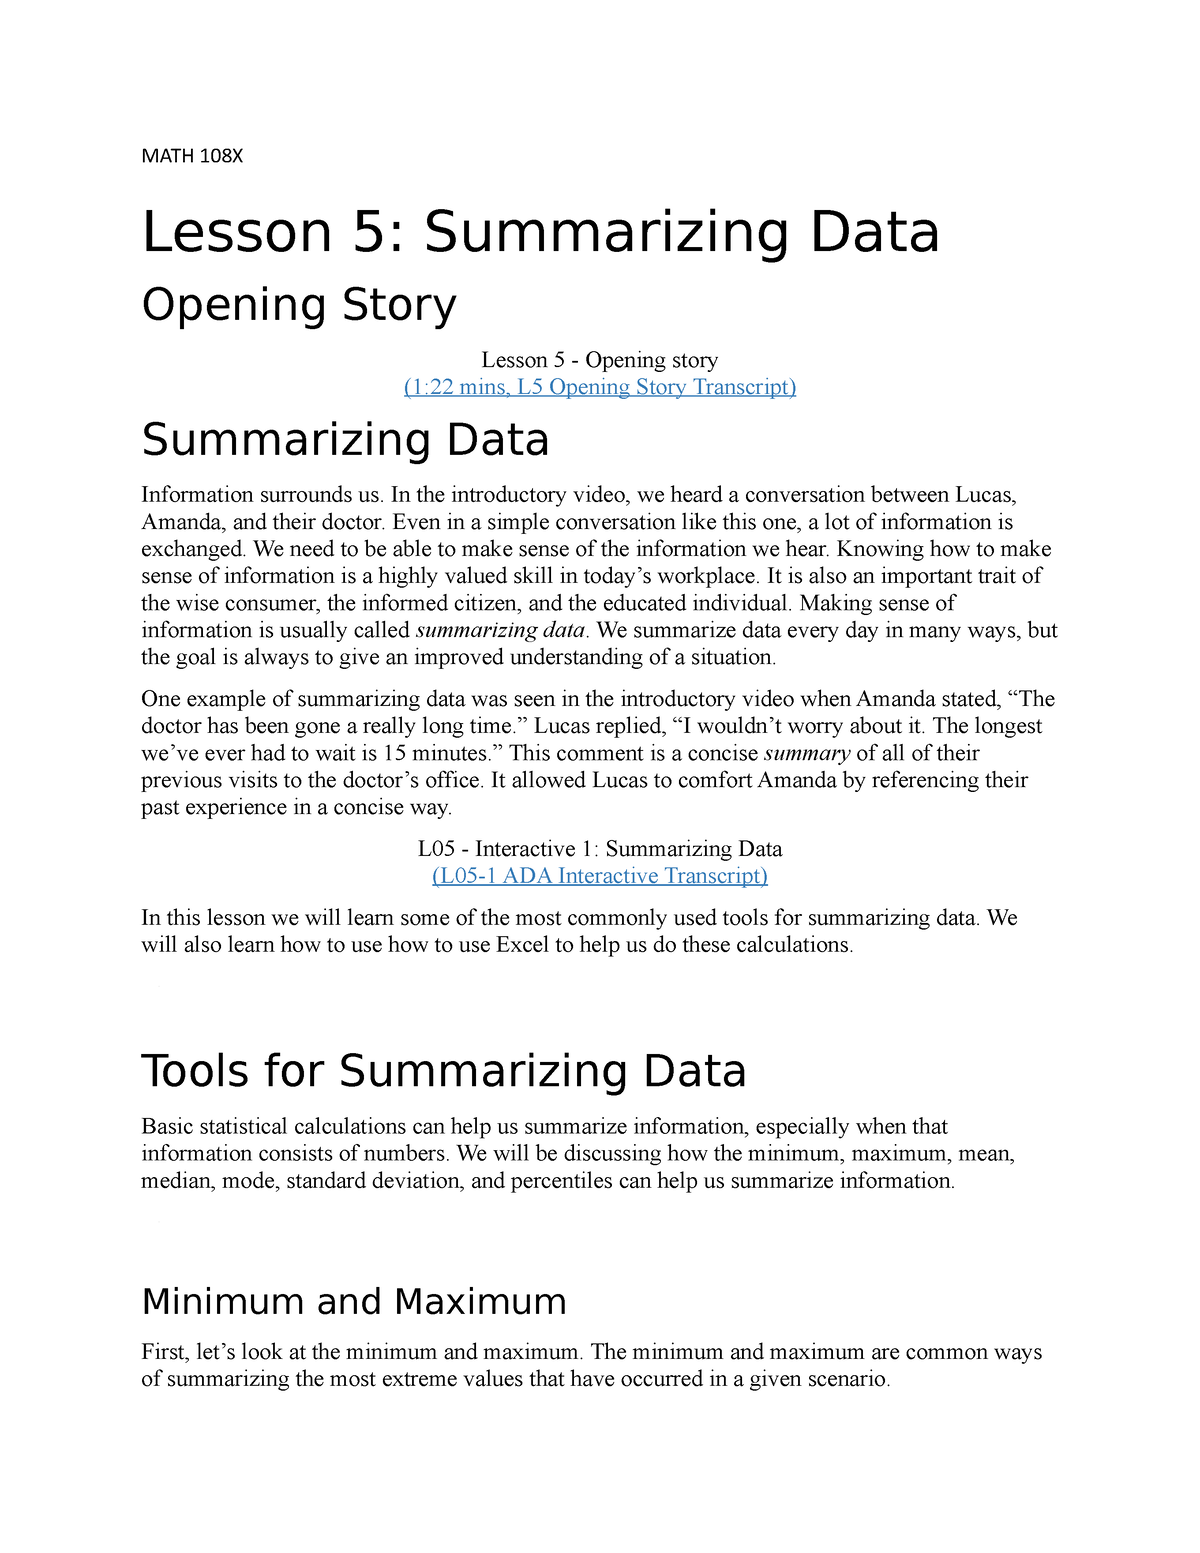 math-108x-lesson-5-summarizing-data-math-108x-lesson-5-summarizing-data-opening-story-lesson